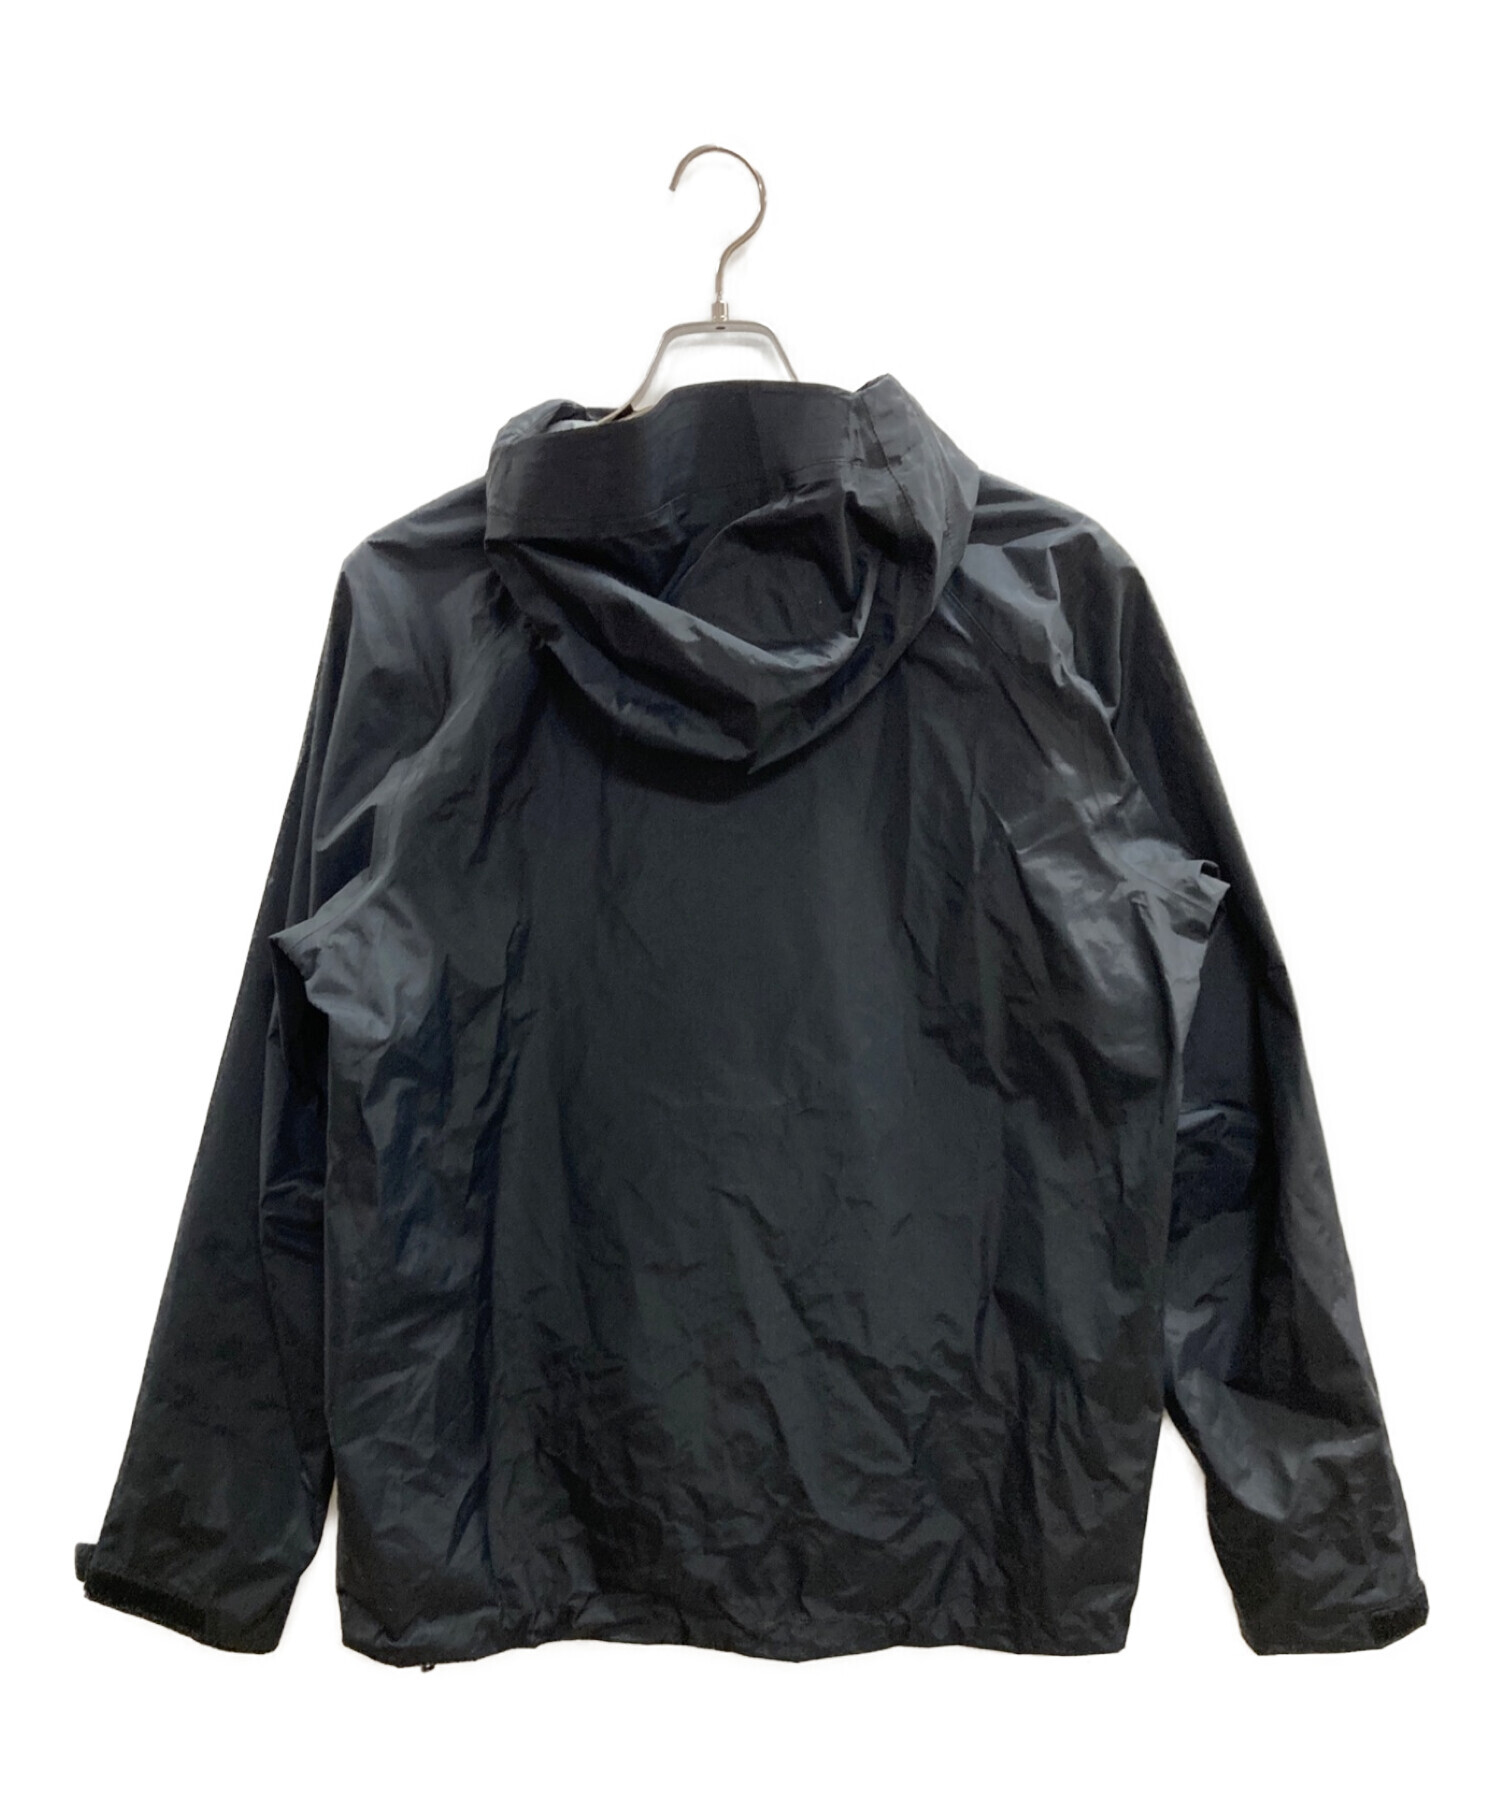 Patagonia (パタゴニア) トレントシェル 3L・ジャケット ブラック サイズ:SIZE M